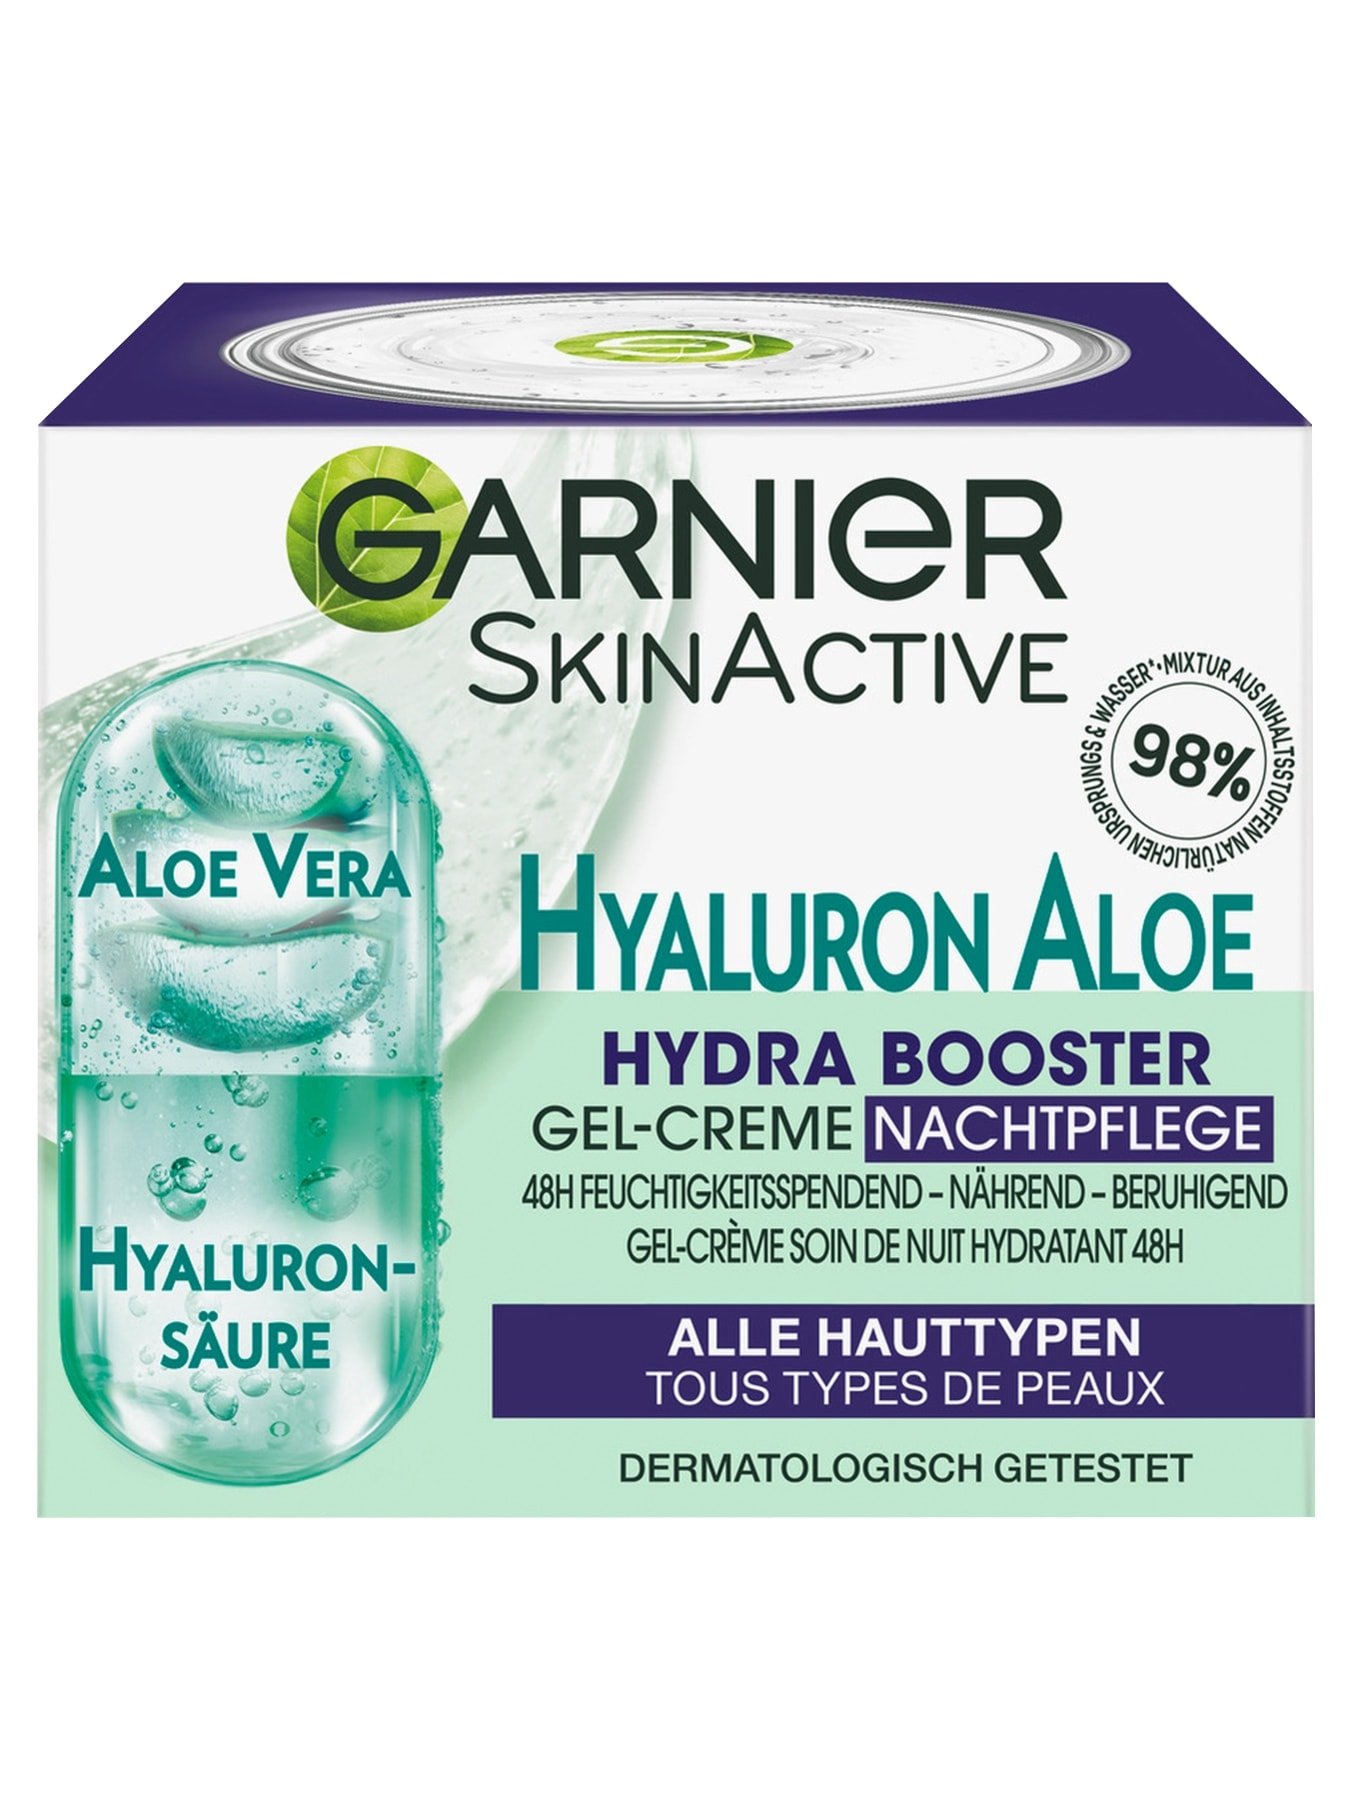 Aloe Booster Hydra Hyaluron | Garnier Nachtpflege Gel-Creme